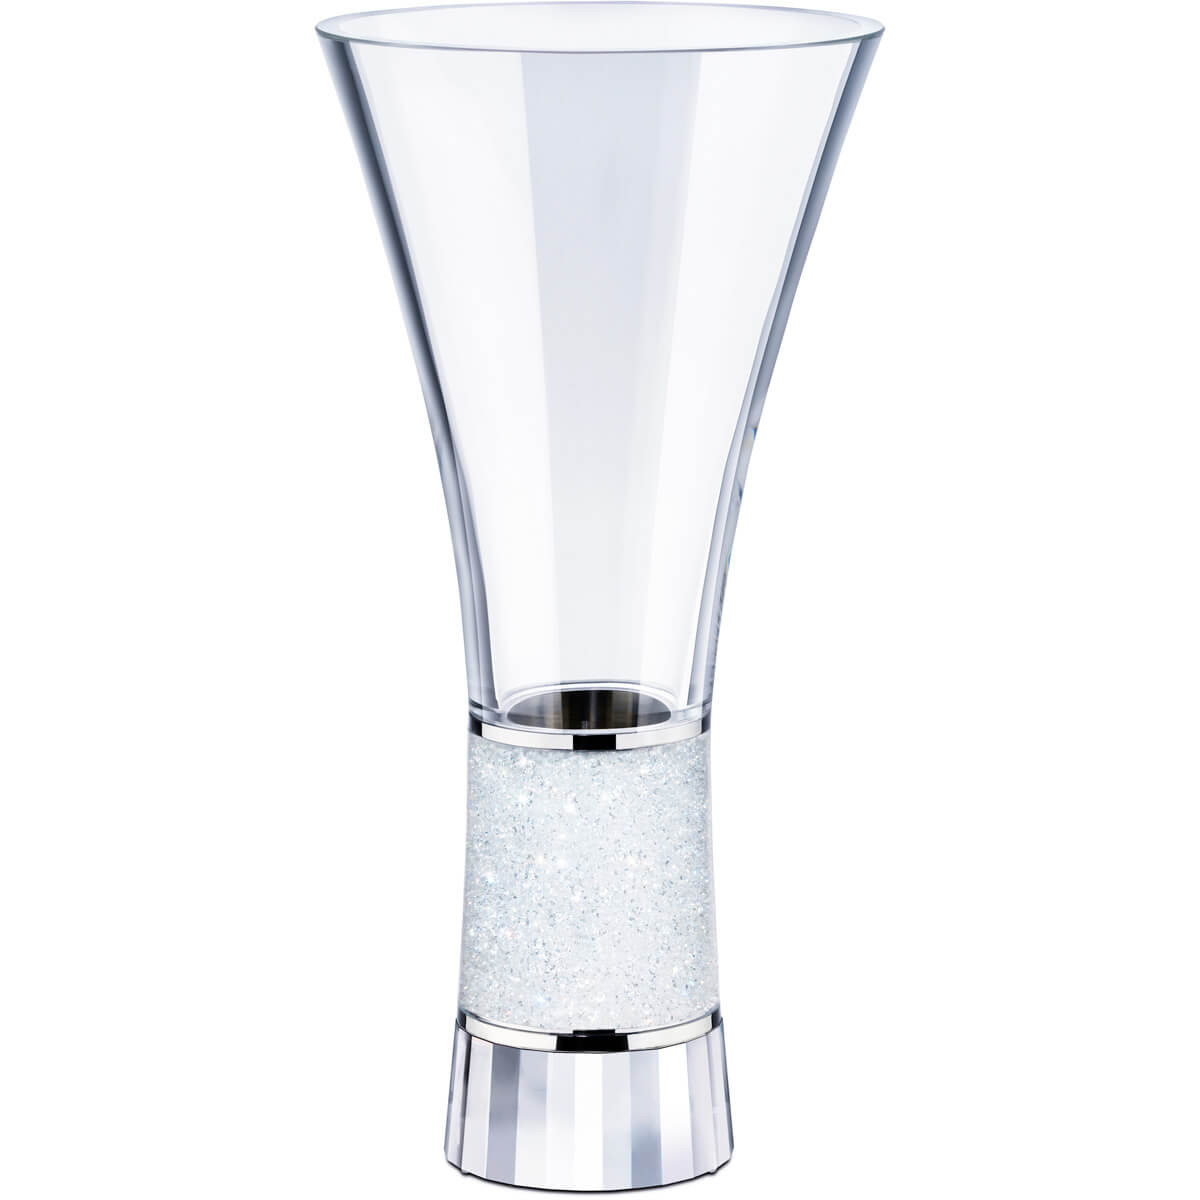 glass vase candle holder of crystalline vase exclusively on swarovski com inside crystalline vase